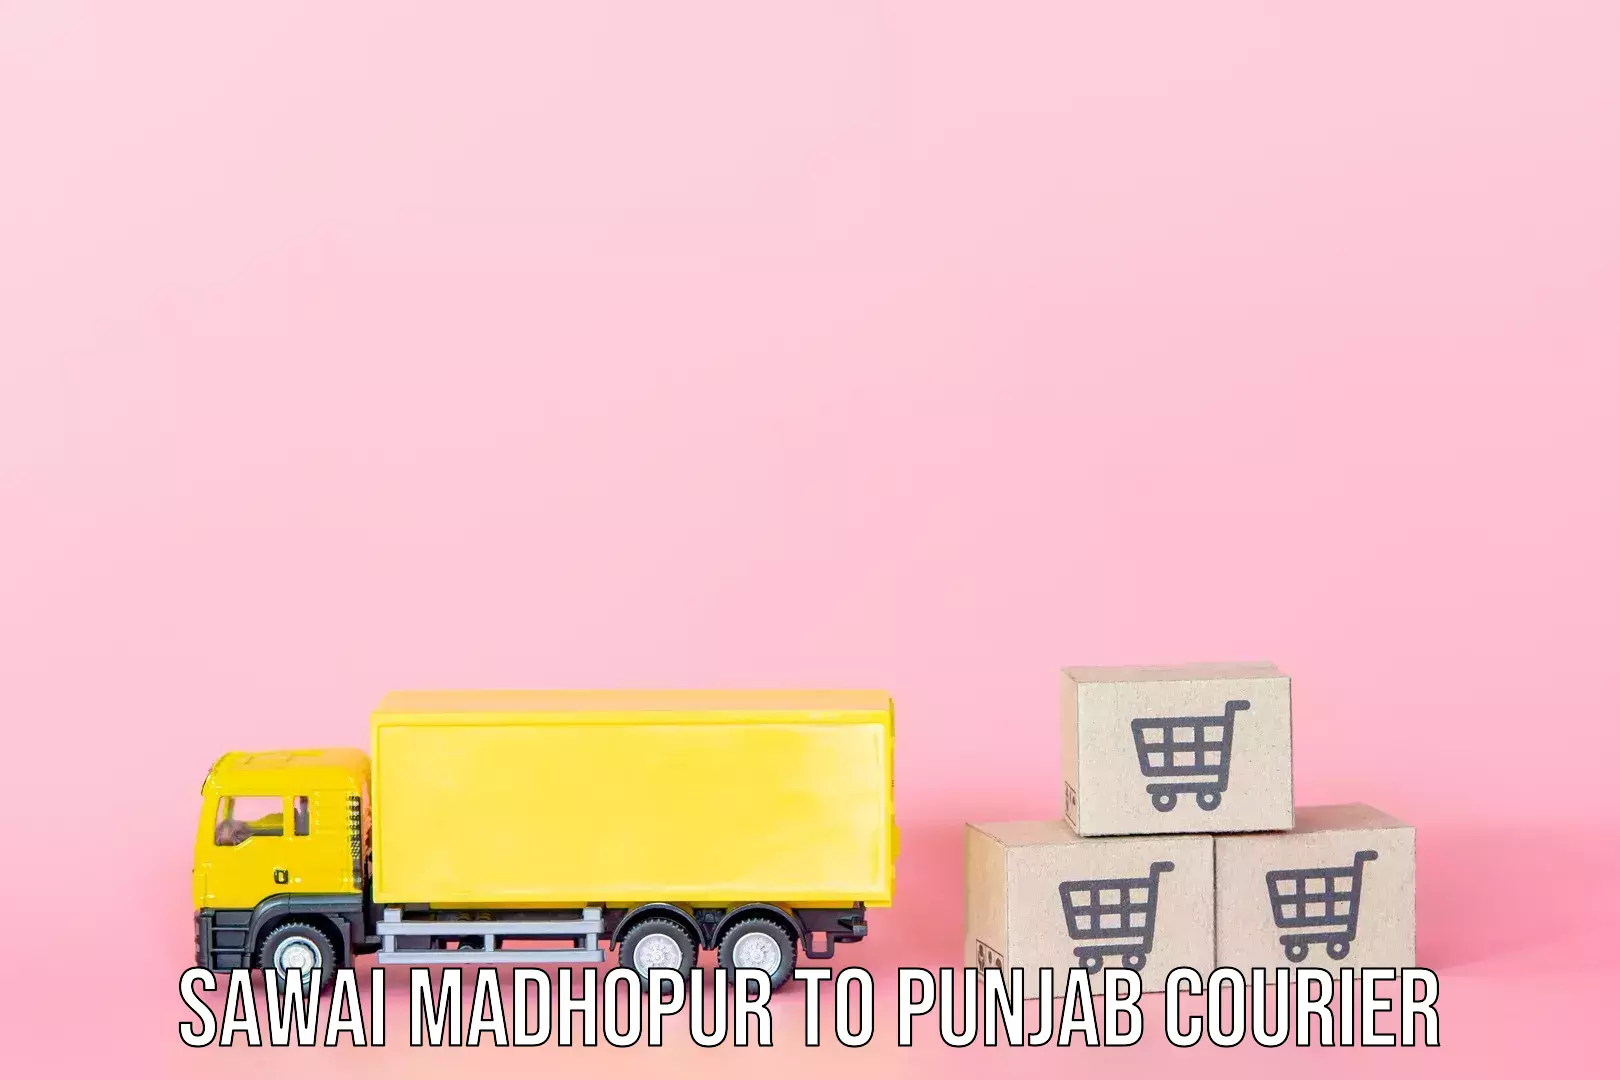 Baggage shipping experts Sawai Madhopur to Punjab